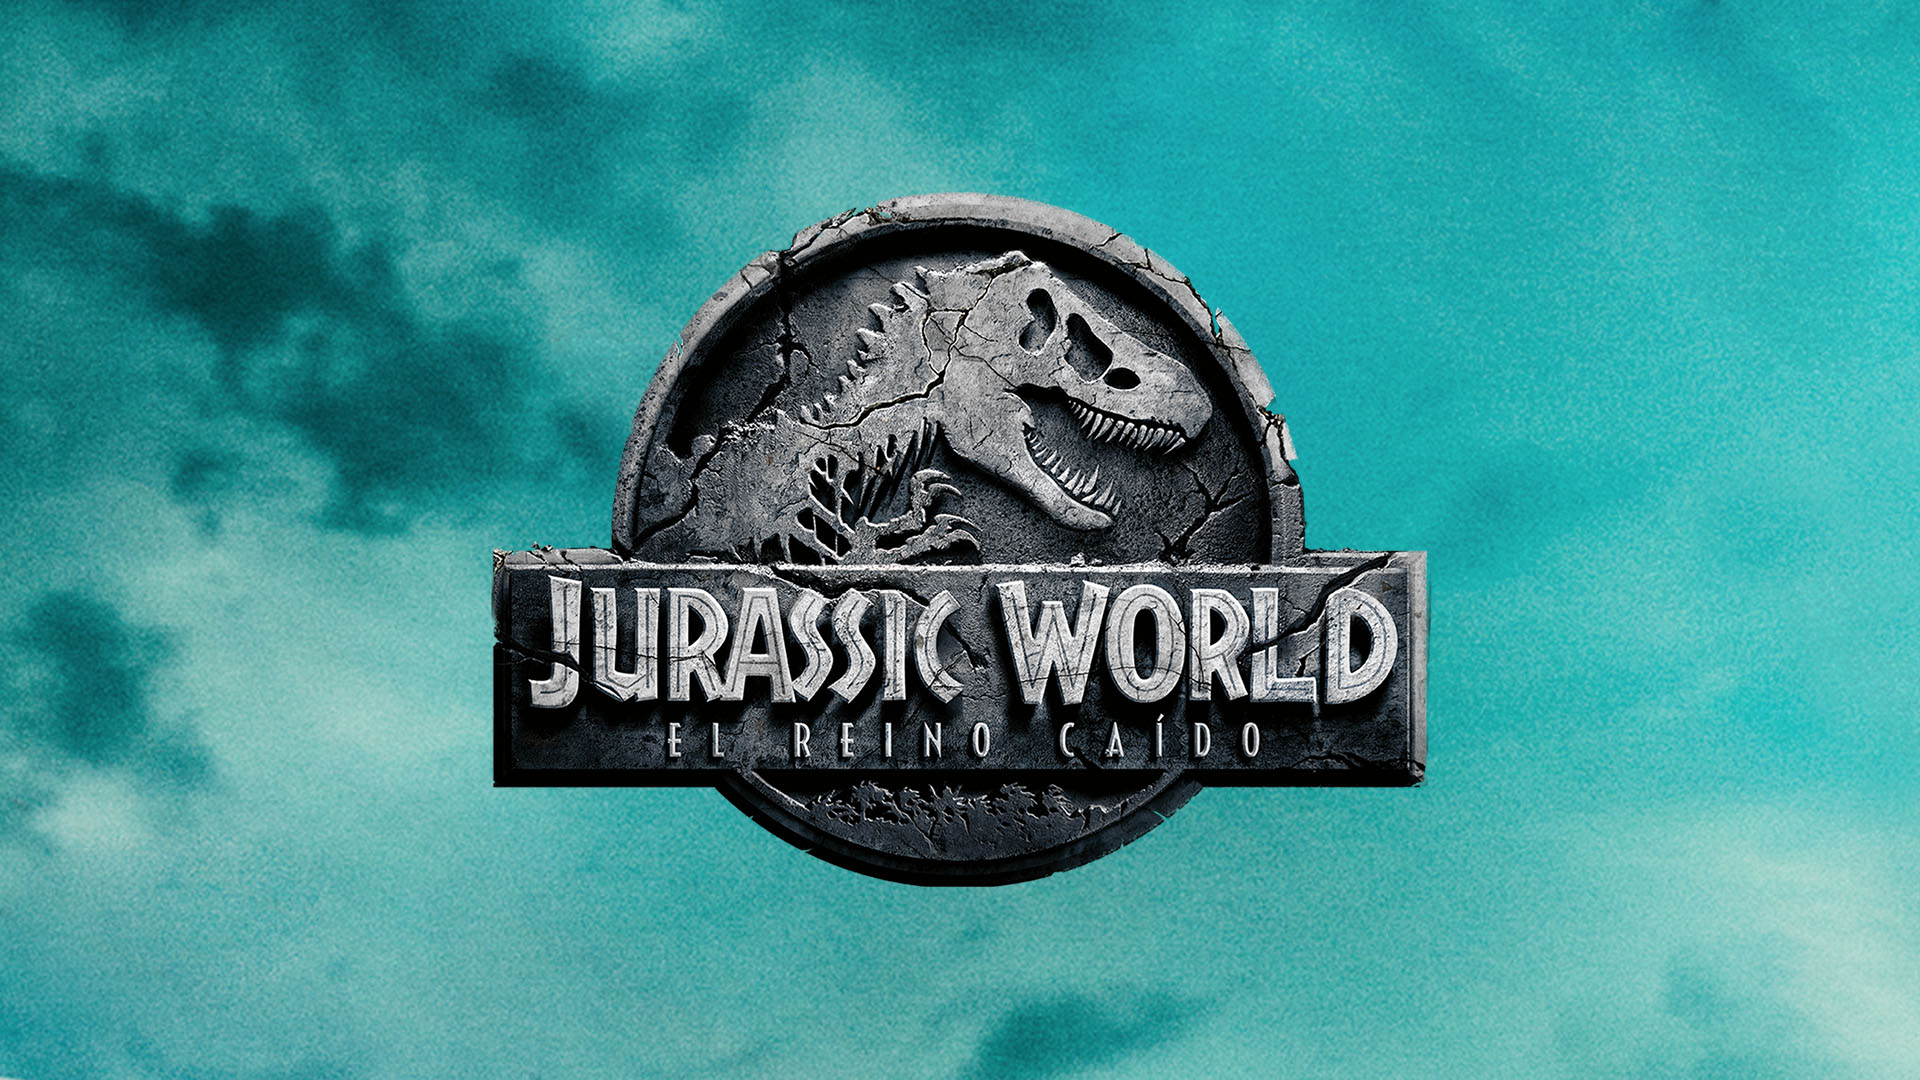 Jurassic World: El Reino Caido - NBC.com